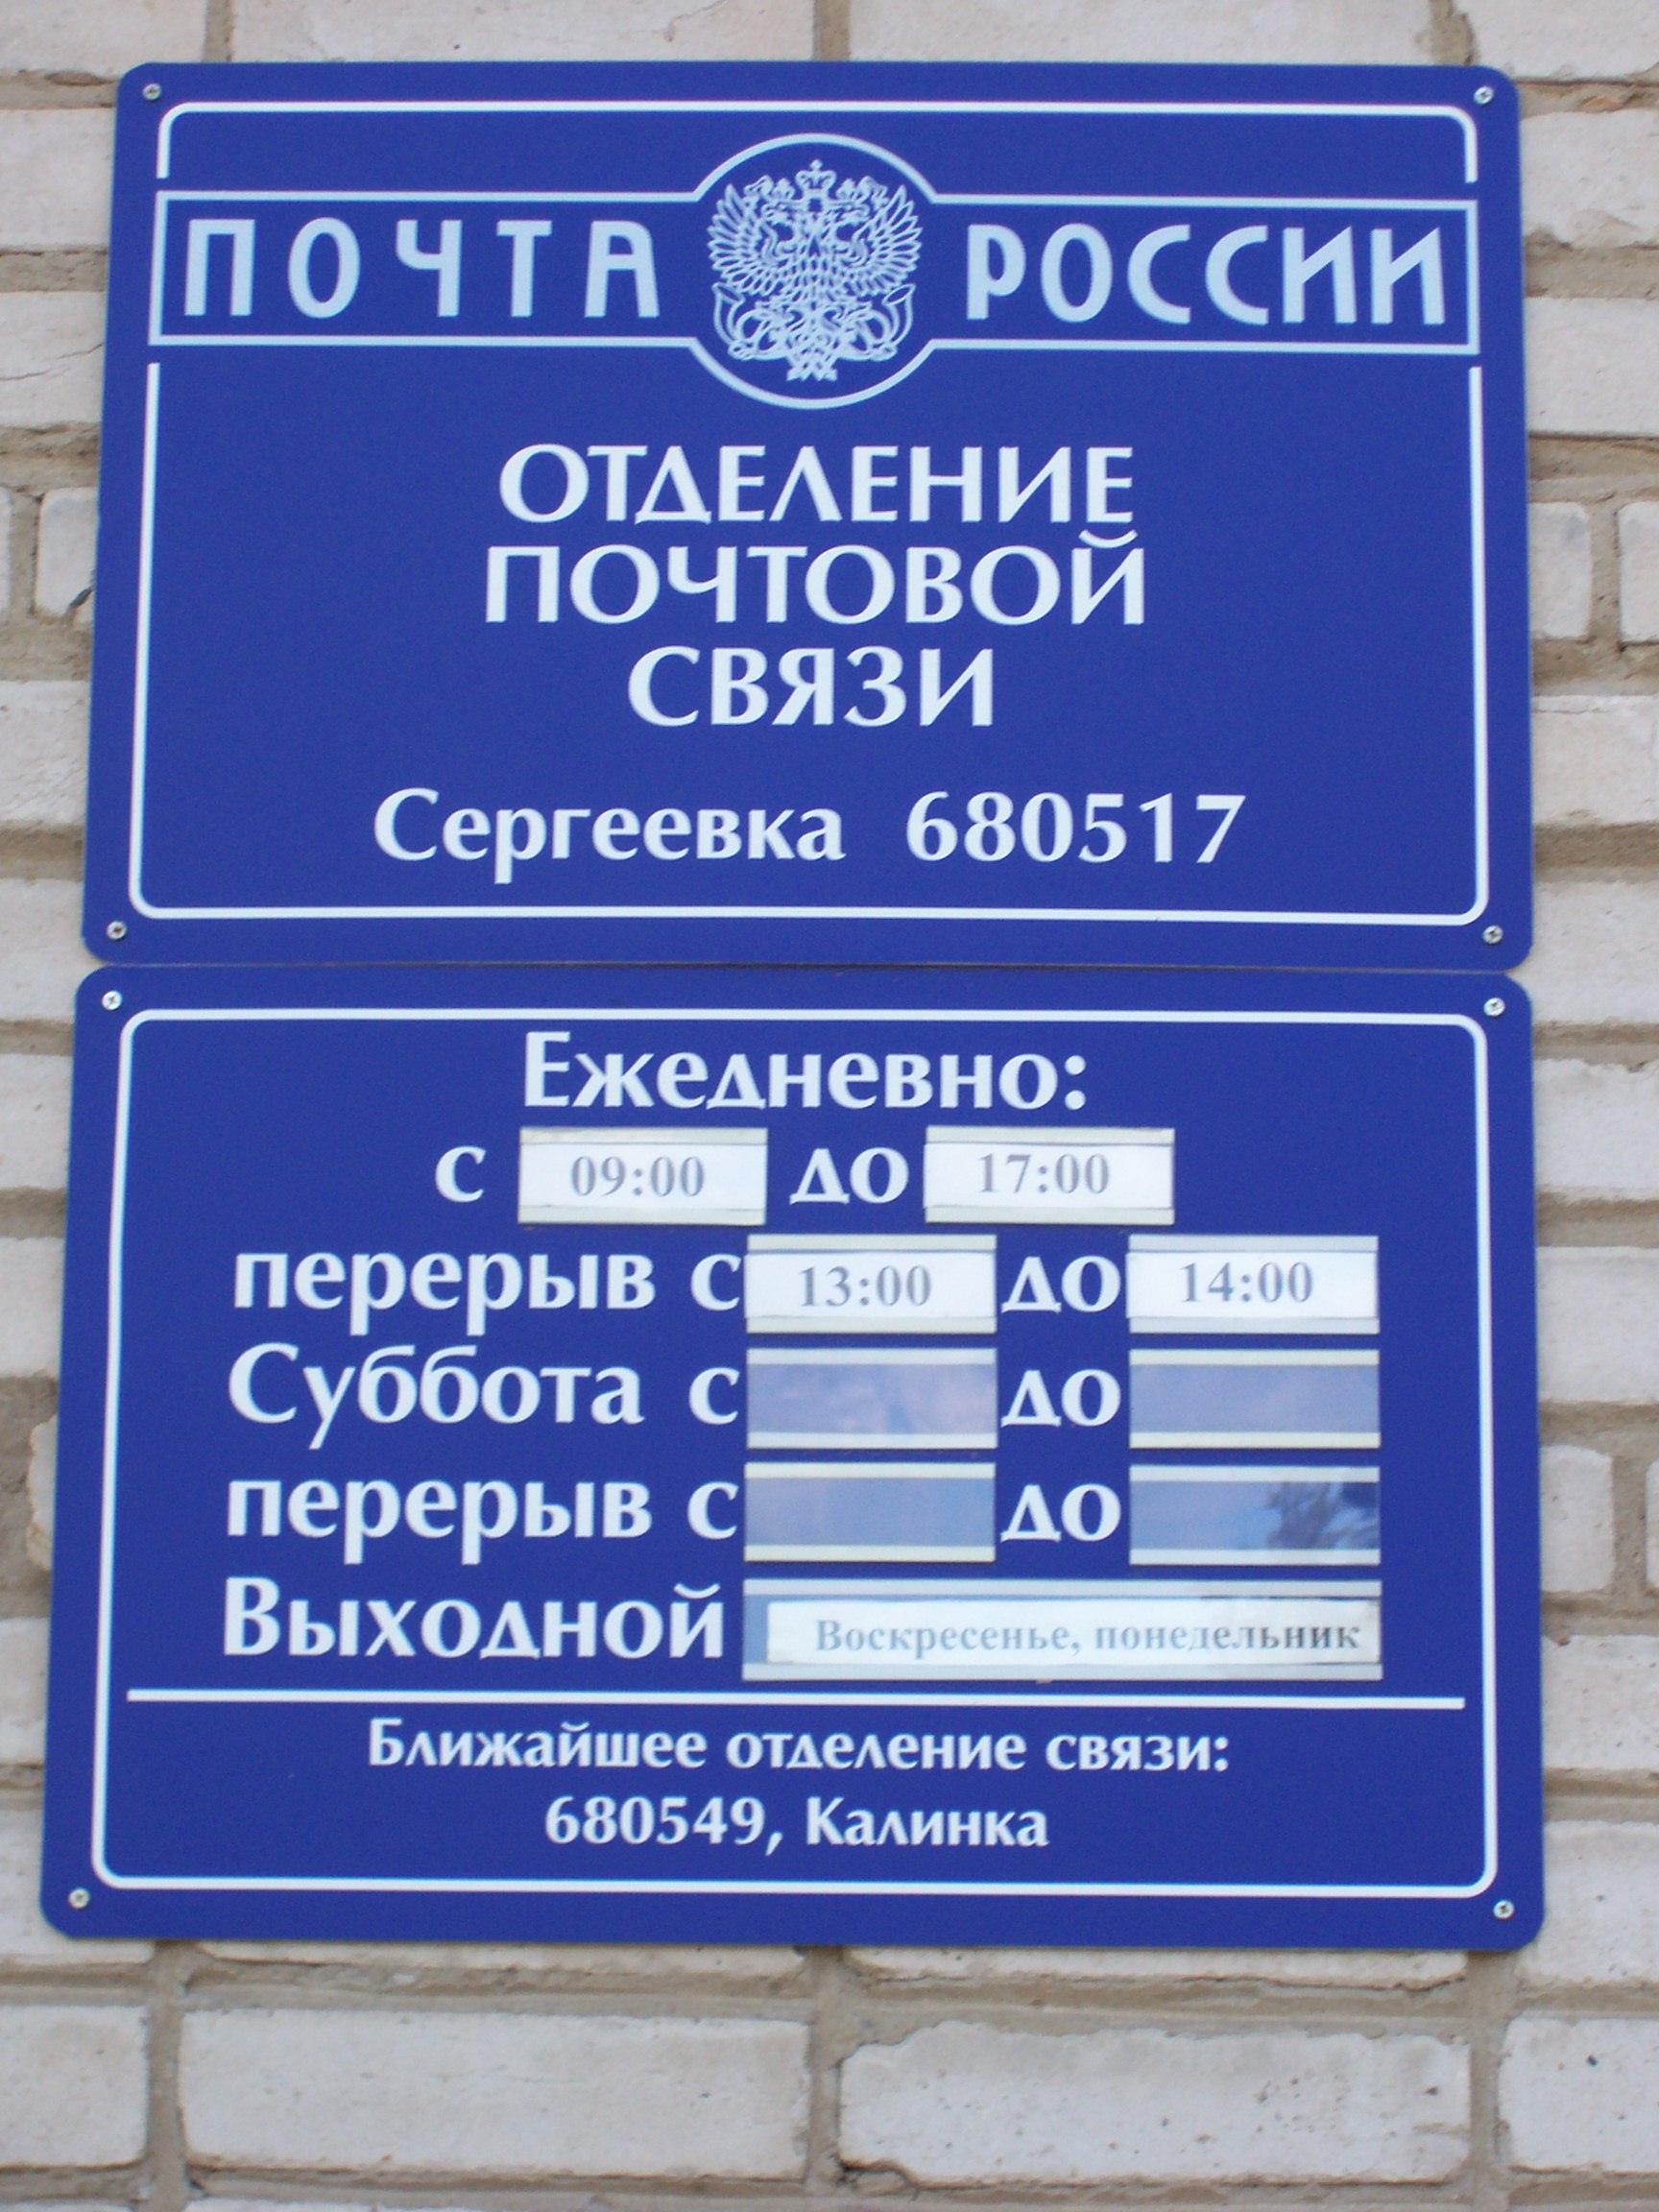 ВХОД, отделение почтовой связи 680517, Хабаровский край, Хабаровский р-он, Сергеевка